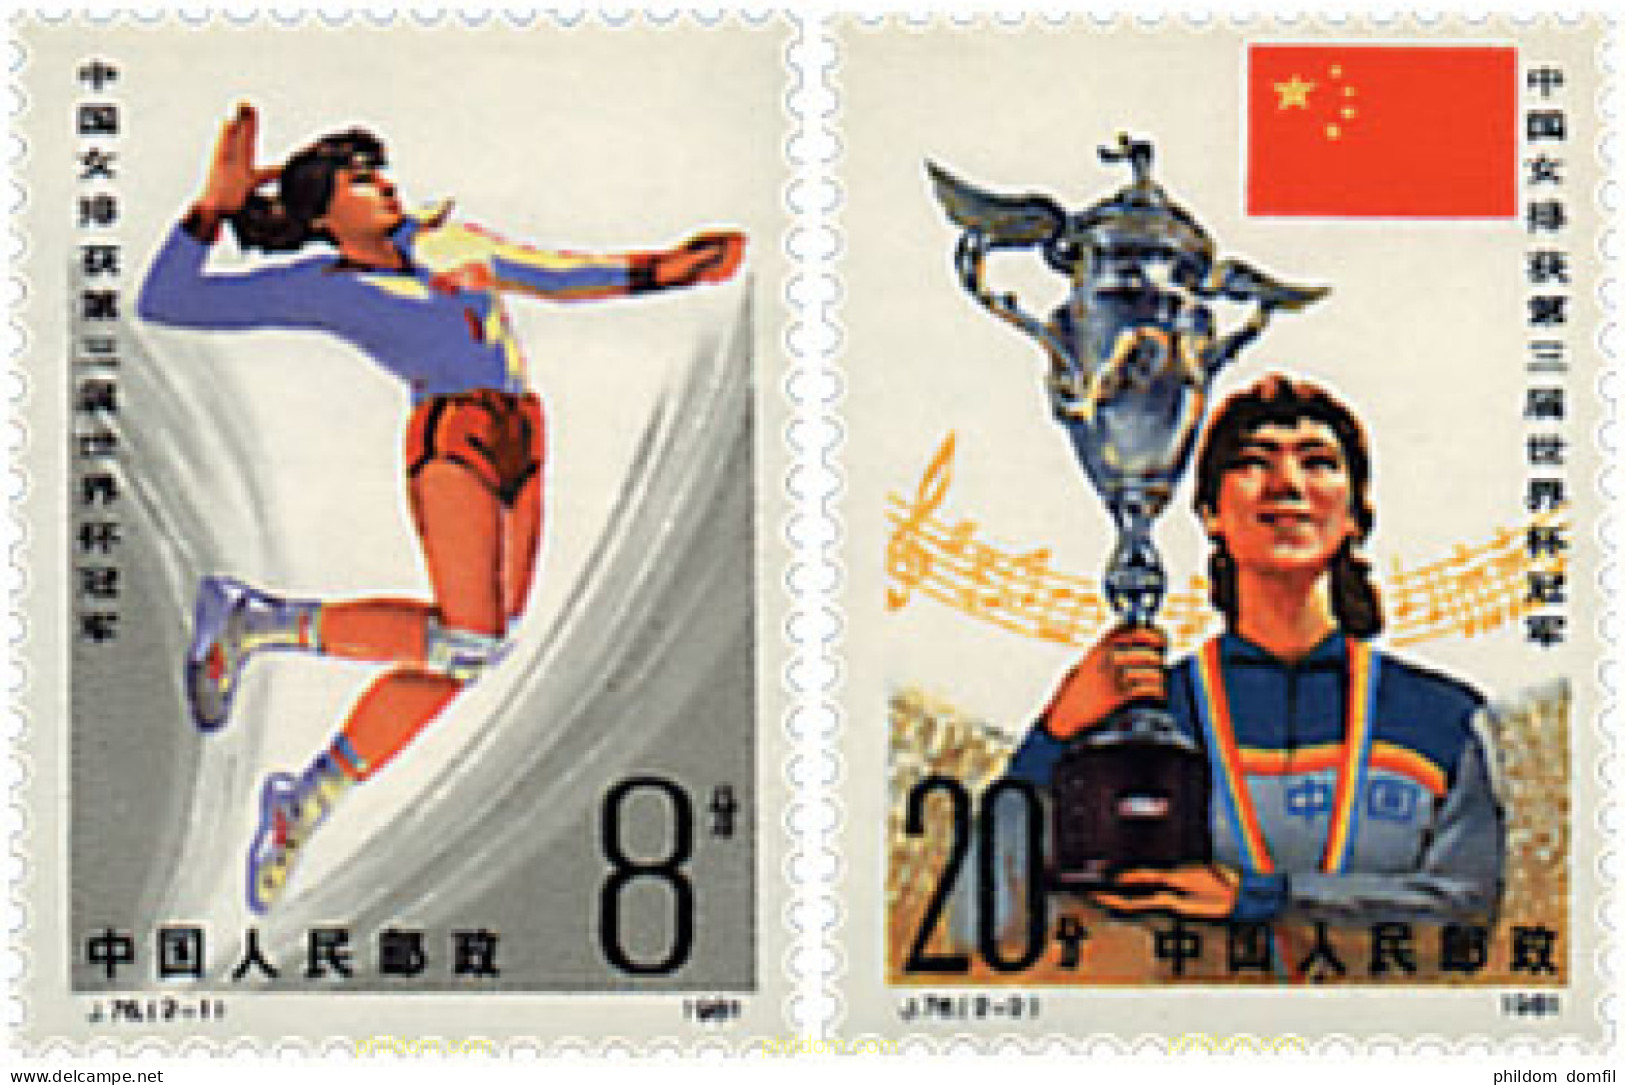 723472 HINGED CHINA. República Popular 1981 COPA DEL MUNDO DE BALONVOLEA. Vencedores - Ongebruikt